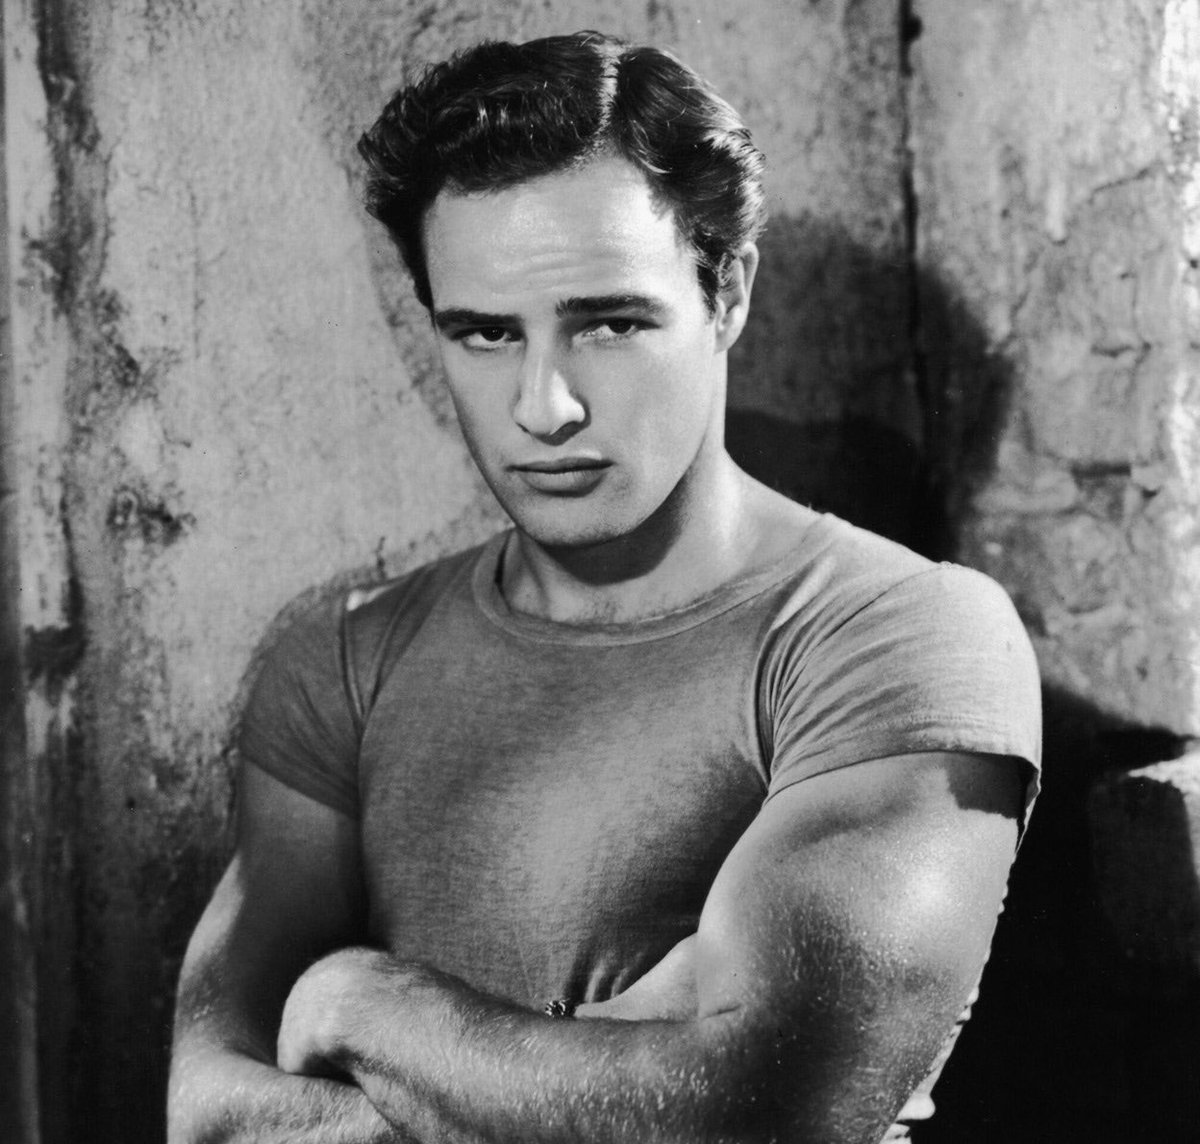 Marlon Brando nació un día como hoy en 1924.

Actor del método Stanislavski que llevó la interpretación a otro nivel🖤🎥.

Actor en el Olimpo del cine🎬. Para mí, de lo mejorcito que ha habido ♥️.

¿Qué película suya es vuestra favorita?